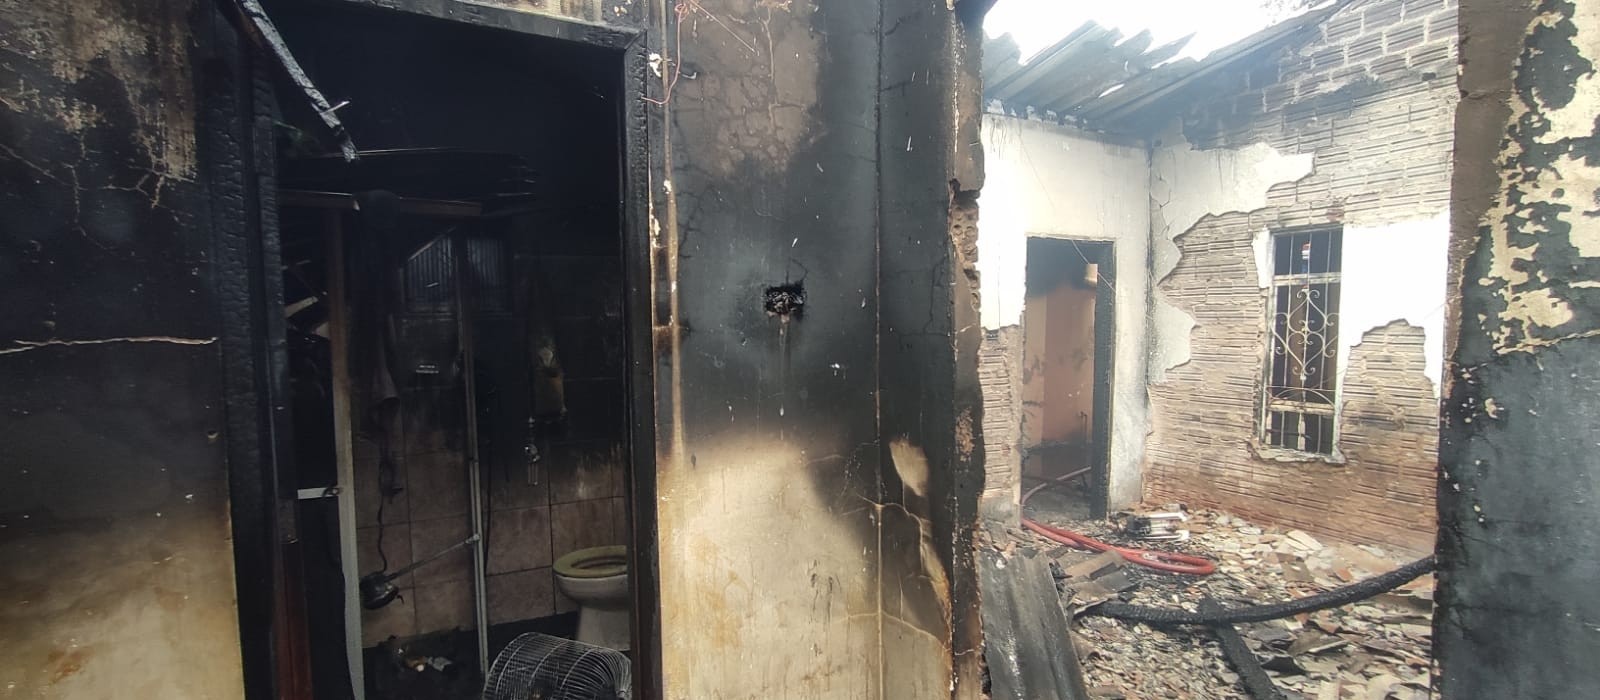  Idoso sofre queimaduras num incêndio em residência em Paranavaí